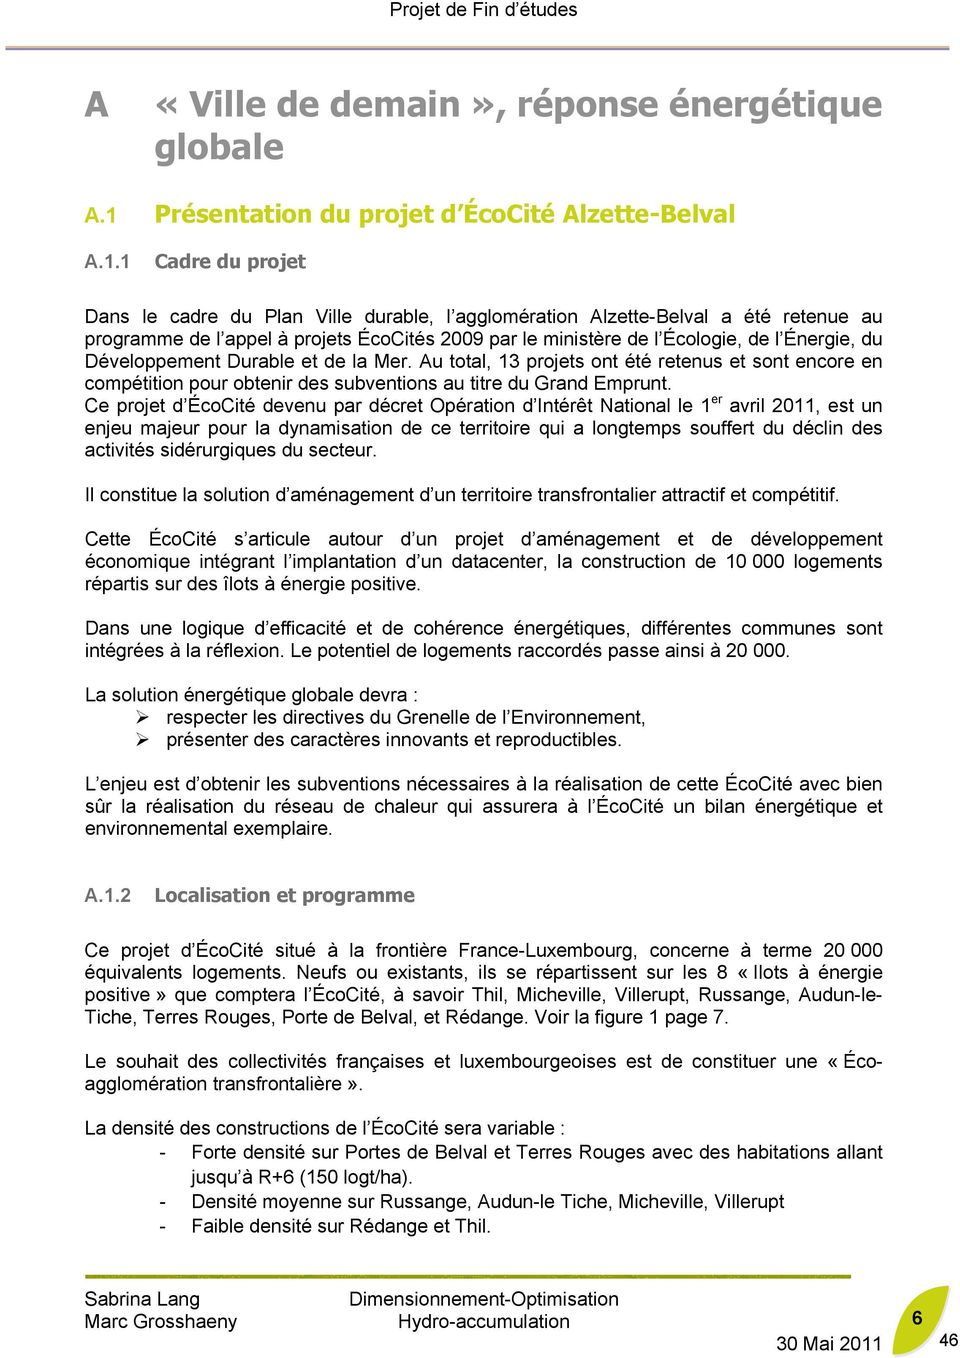 1 Cadre du projet Dans le cadre du Plan Ville durable, l agglomération Alzette-Belval a été retenue au programme de l appel à projets ÉcoCités 2009 par le ministère de l Écologie, de l Énergie, du